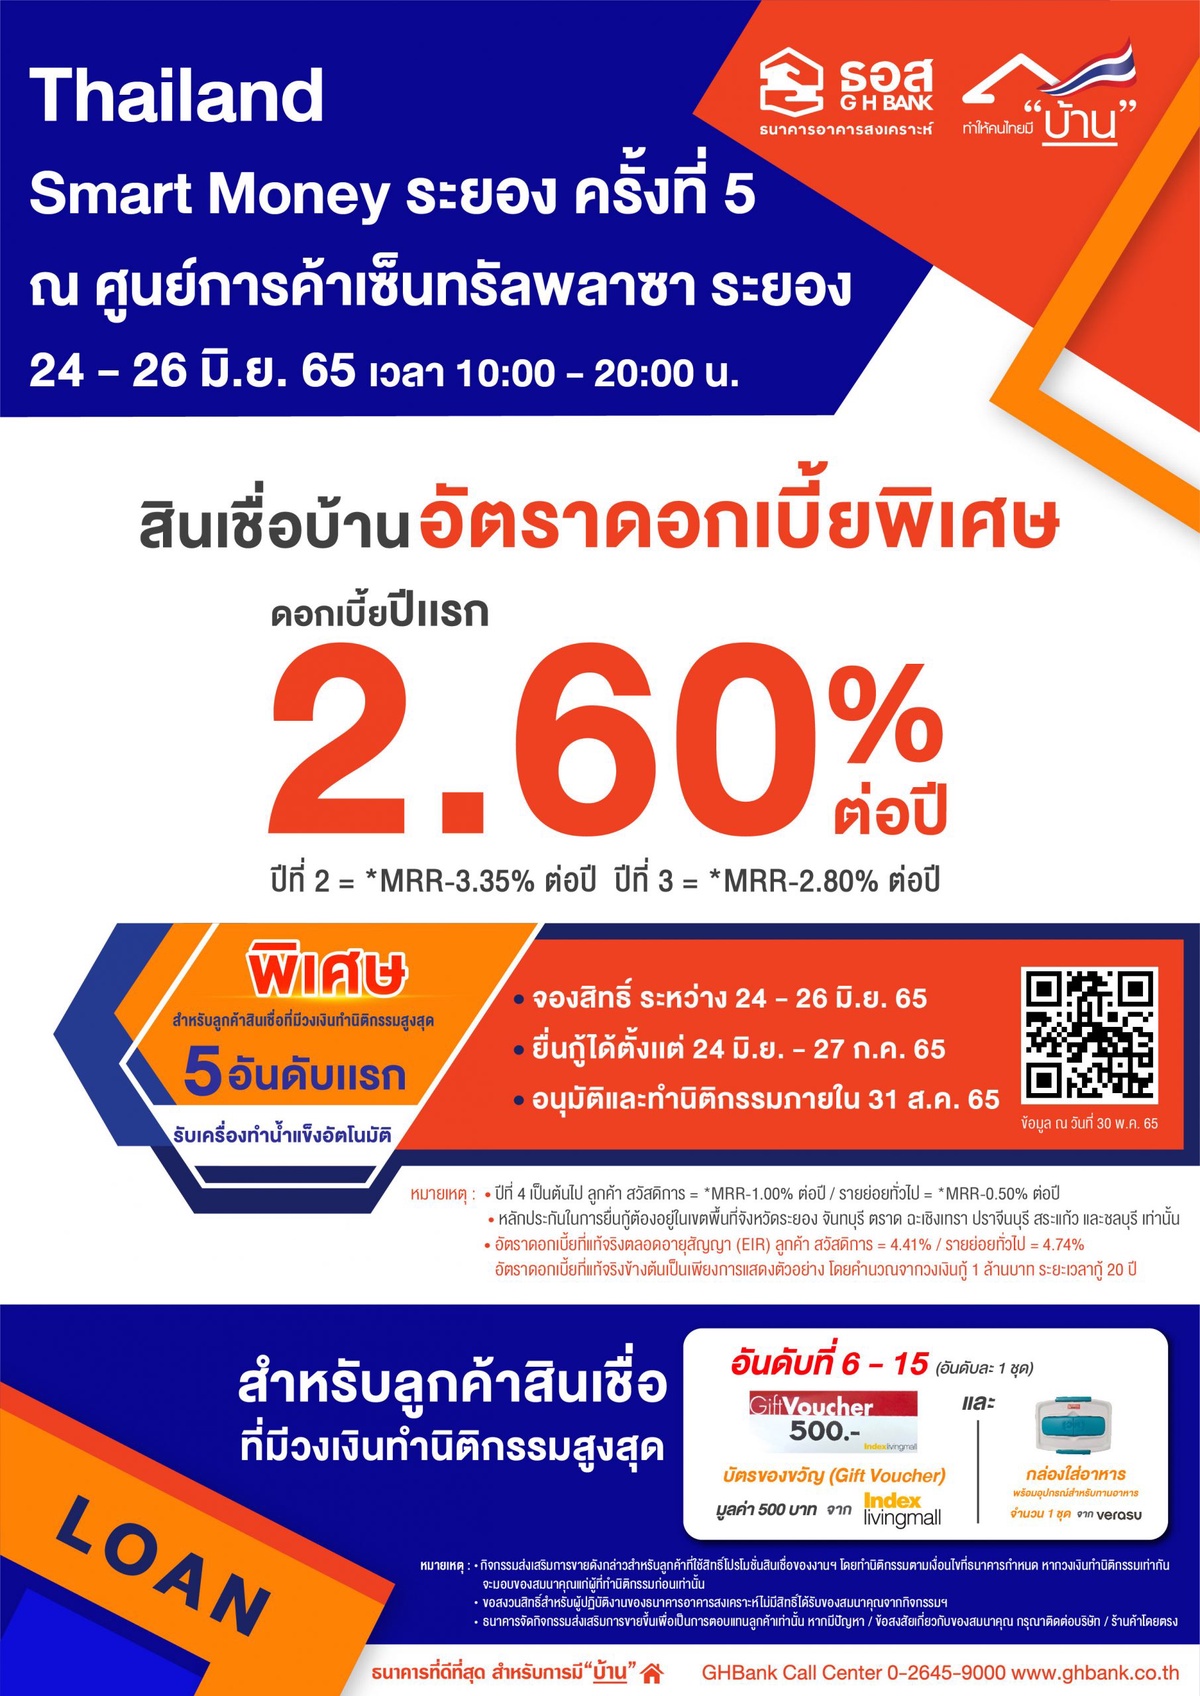 ธอส. ขนโปรโมชั่น สินเชื่อบ้านอัตราดอกเบี้ยคงที่ปีแรก 2.60% ต่อปี ร่วมงาน Thailand Smart Money ระยอง ครั้งที่